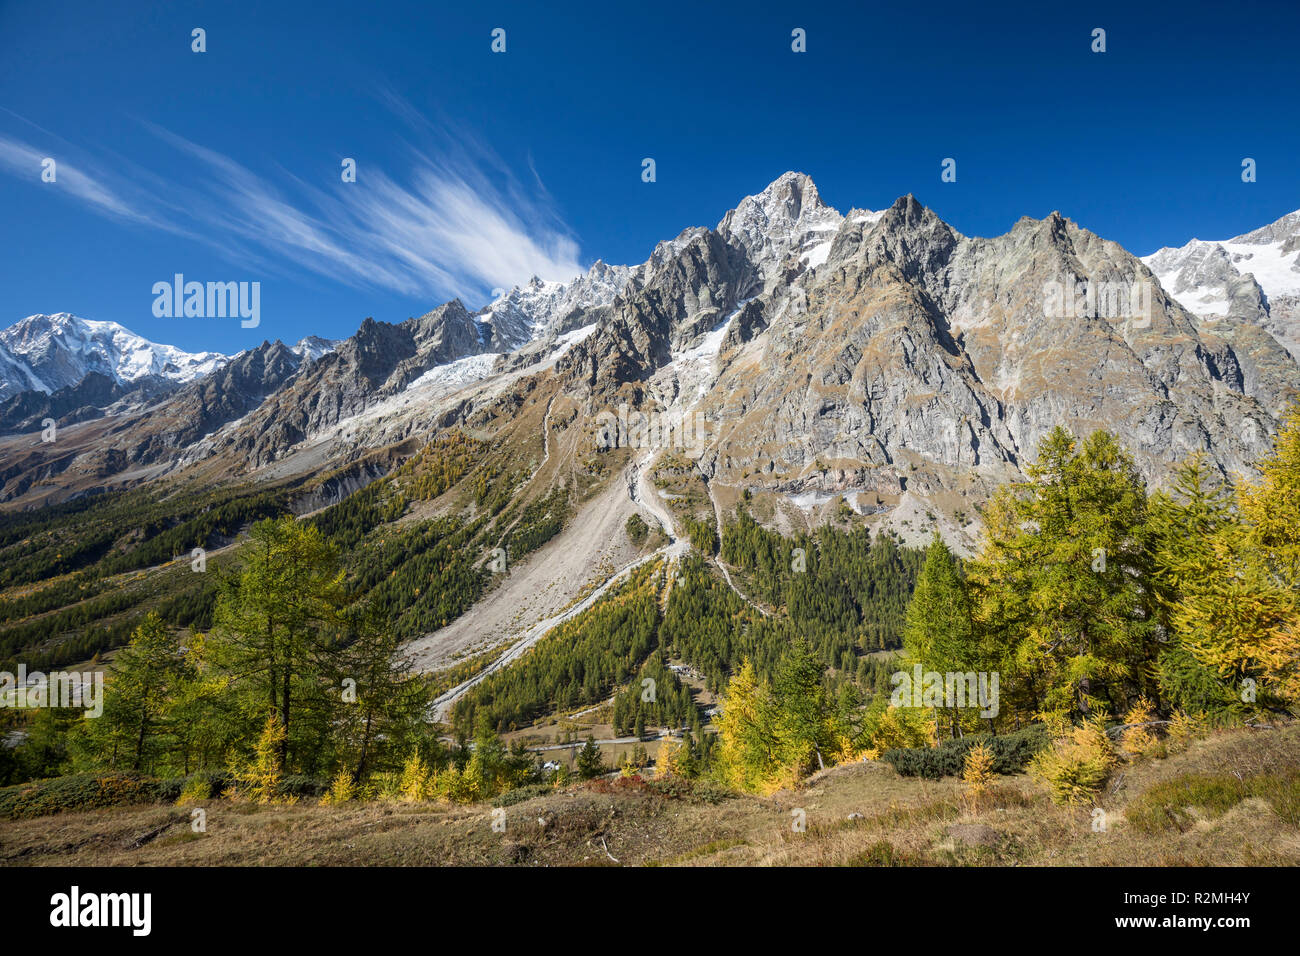 Blick über das herbstliche Val Ferret zum Grandes Jorasses (4208m), Mont-Blanc-Massiv, Nähe Courmayeur, Provinz Aosta, hotel aostatal, Italien Banque D'Images